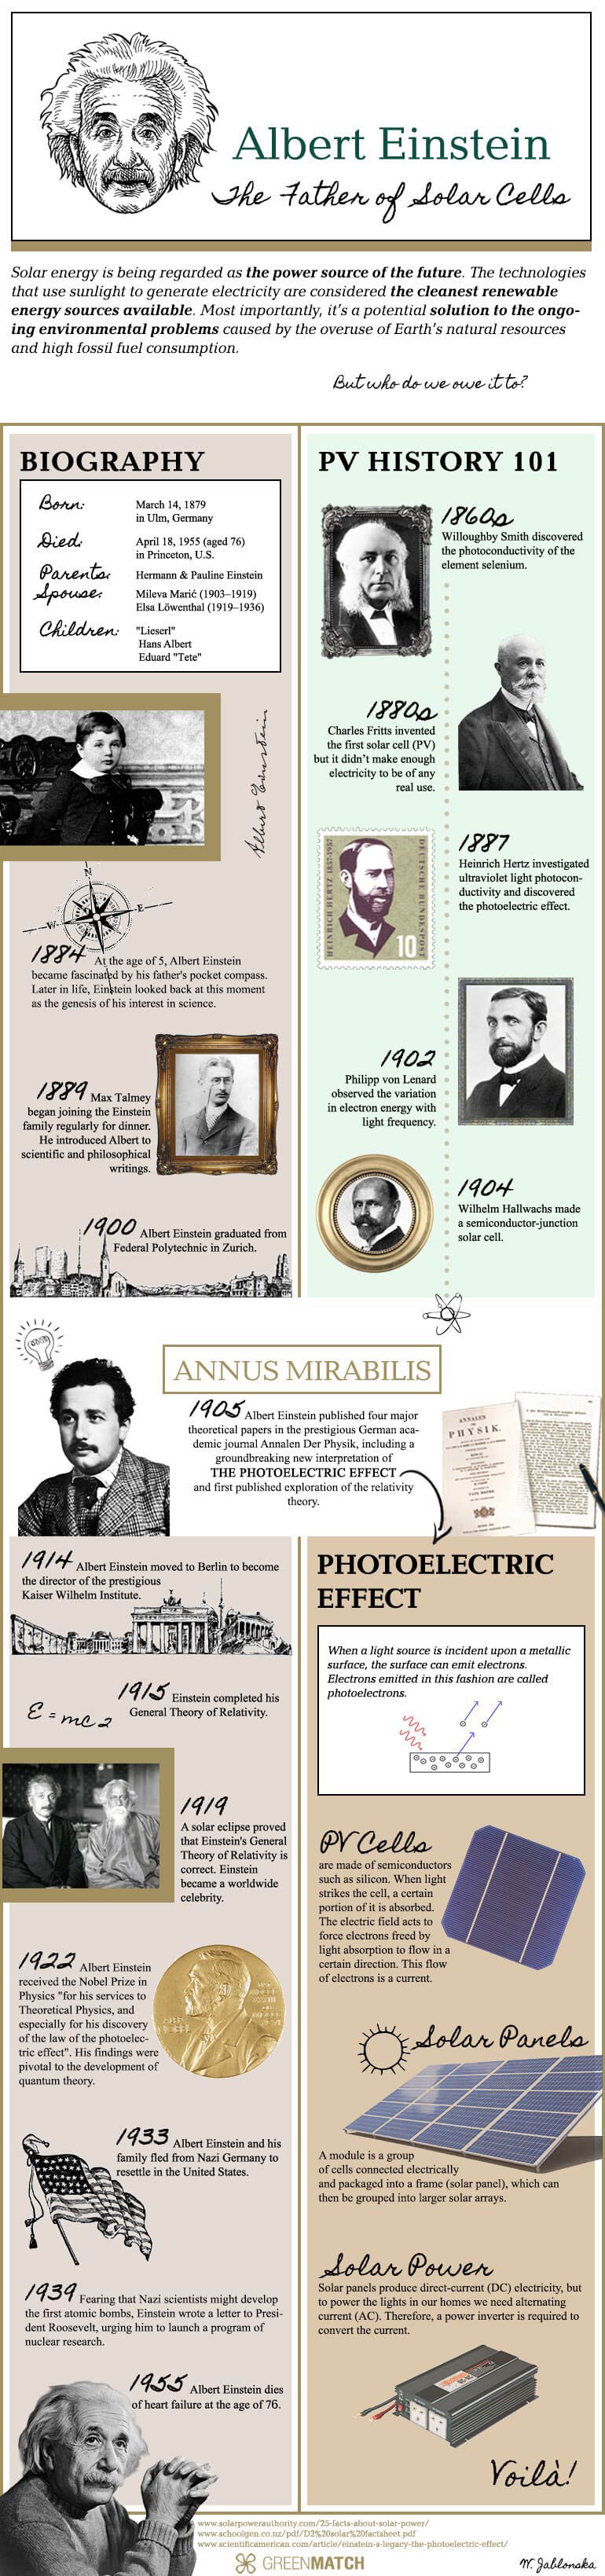 Albert Einstein: The Father of Solar Cells